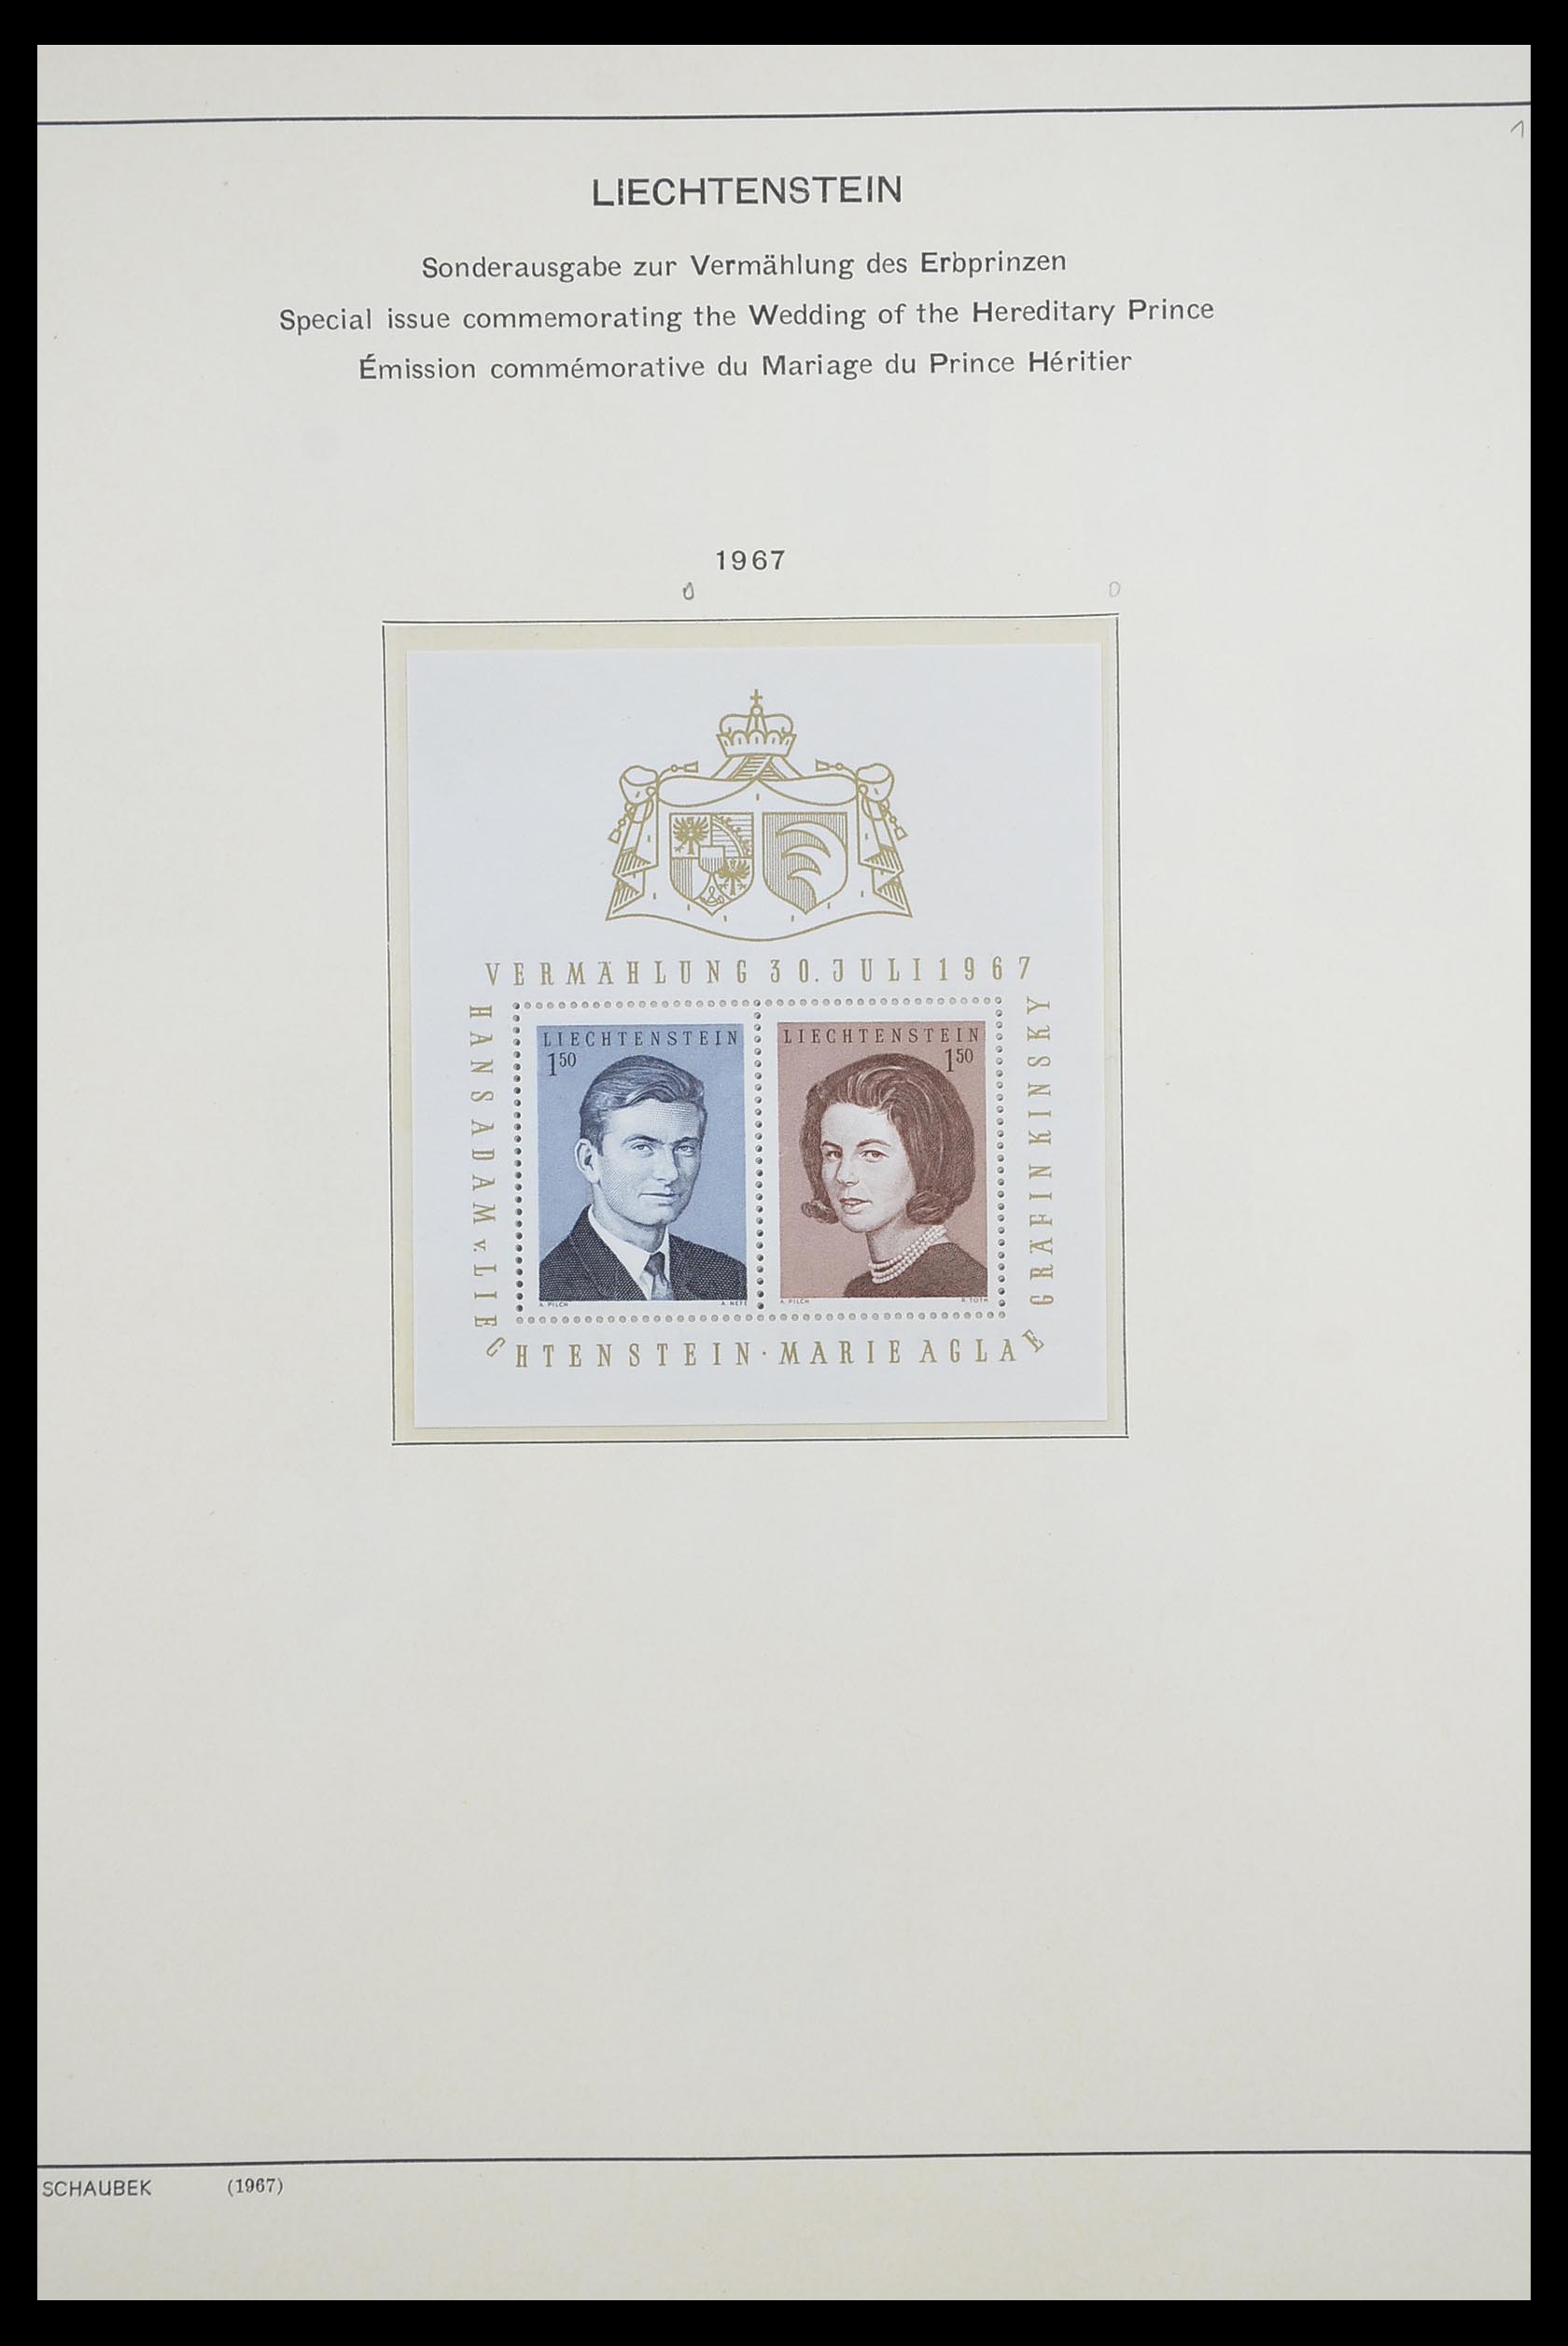 33274 046 - Stamp collection 33274 Liechtenstein 1912-1996.